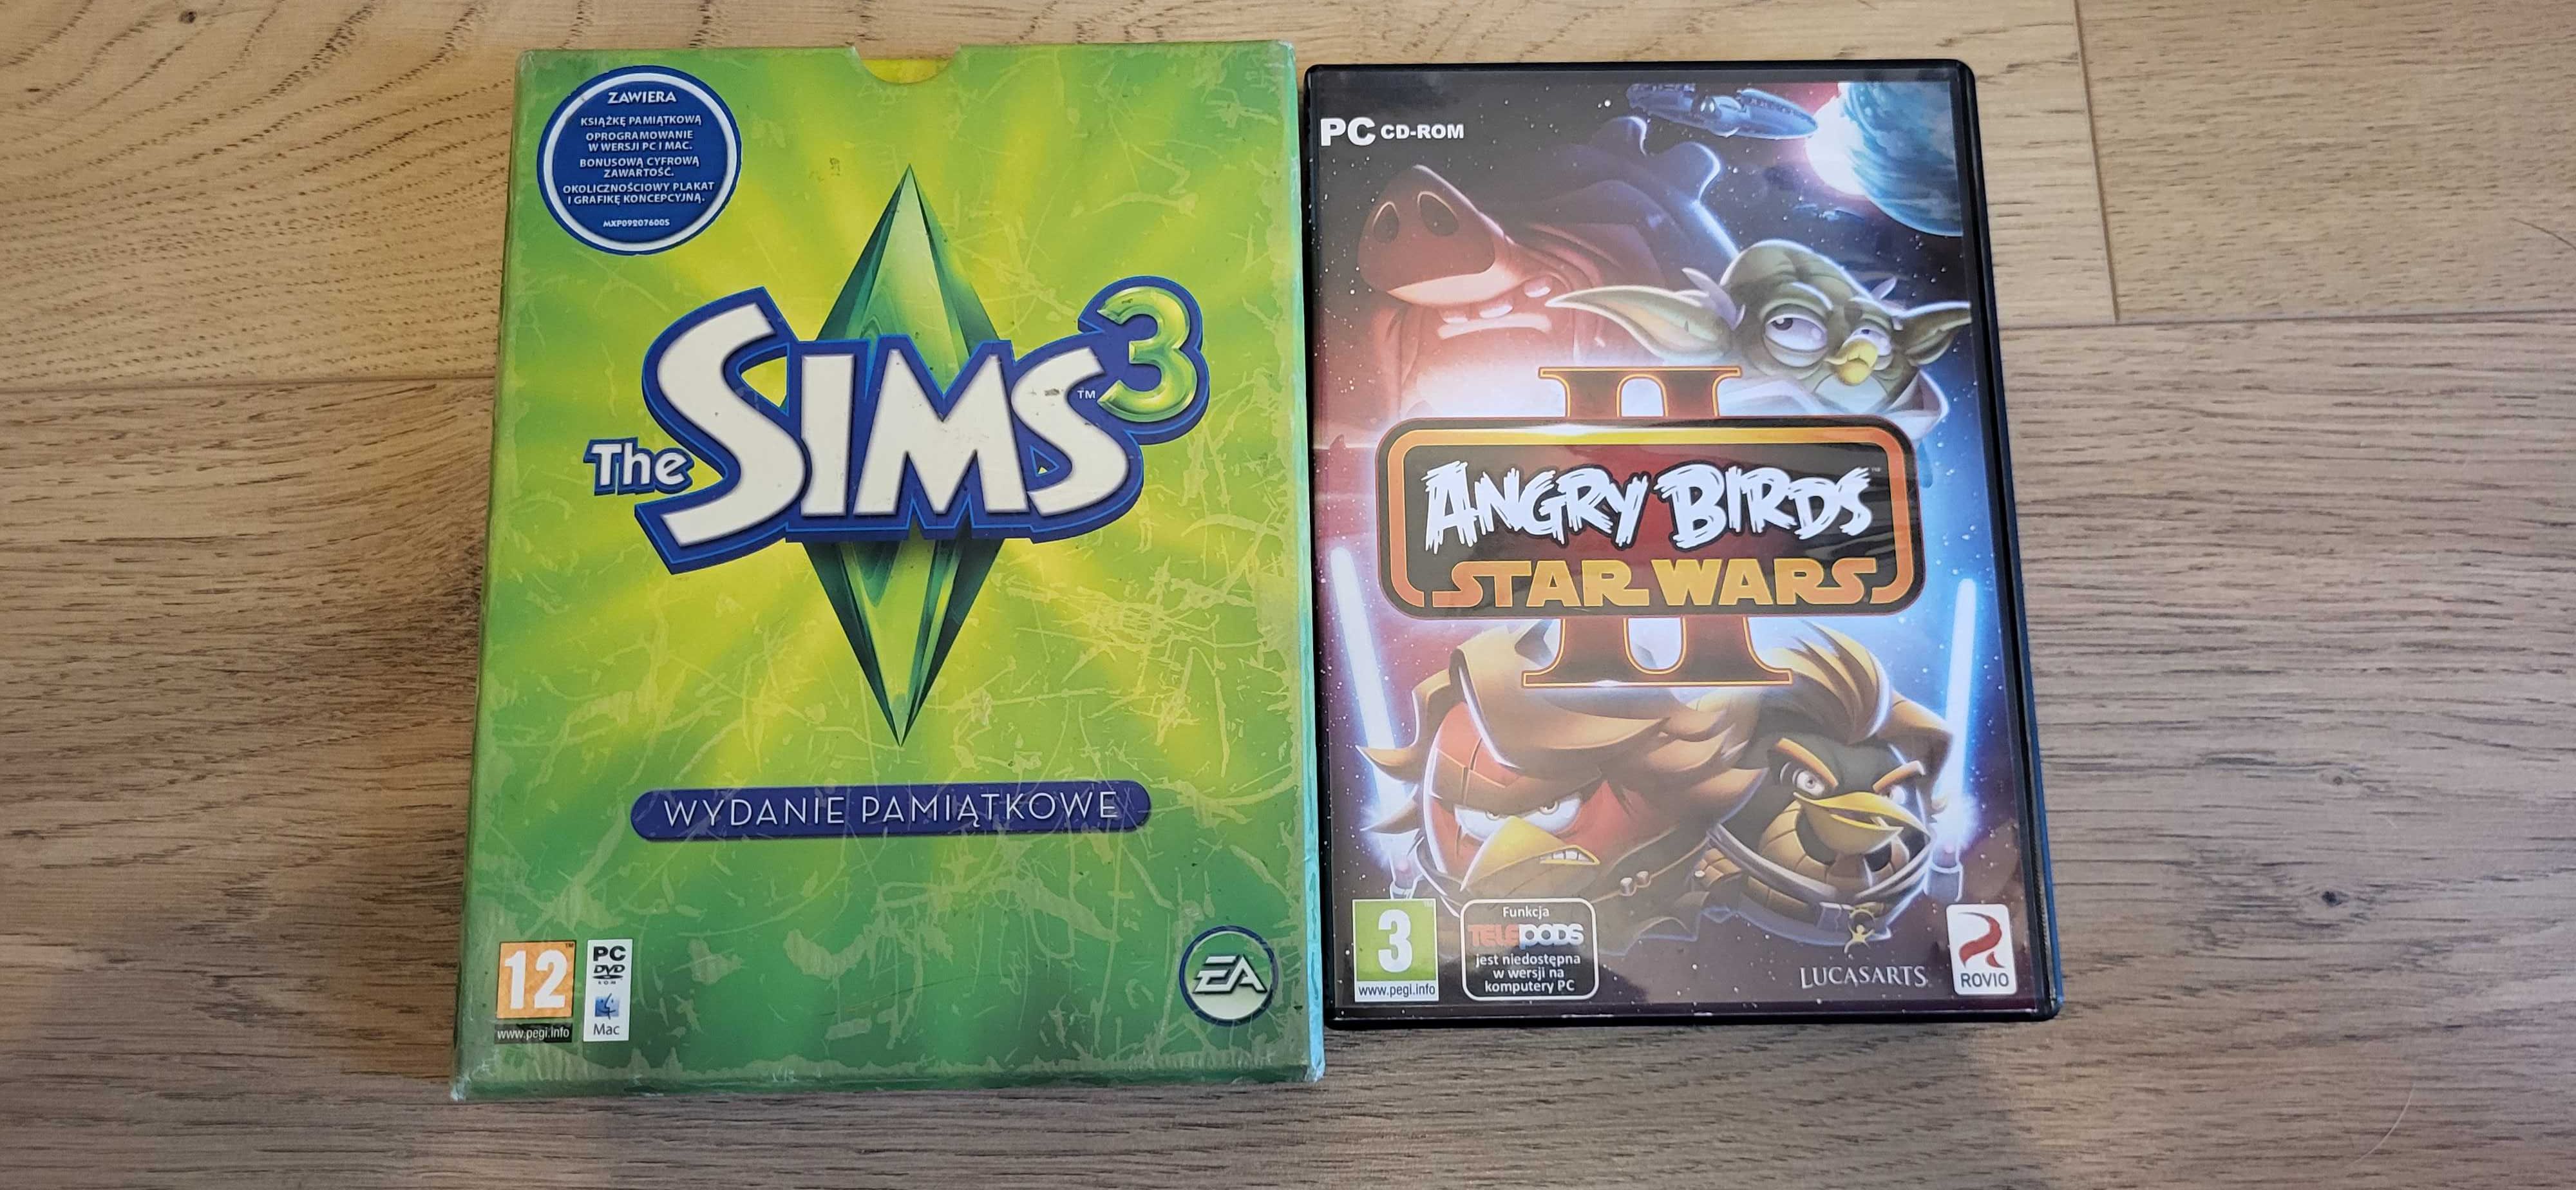 AngryBirds StarWars 2 The Sims 3 wyd. pamiątkowe